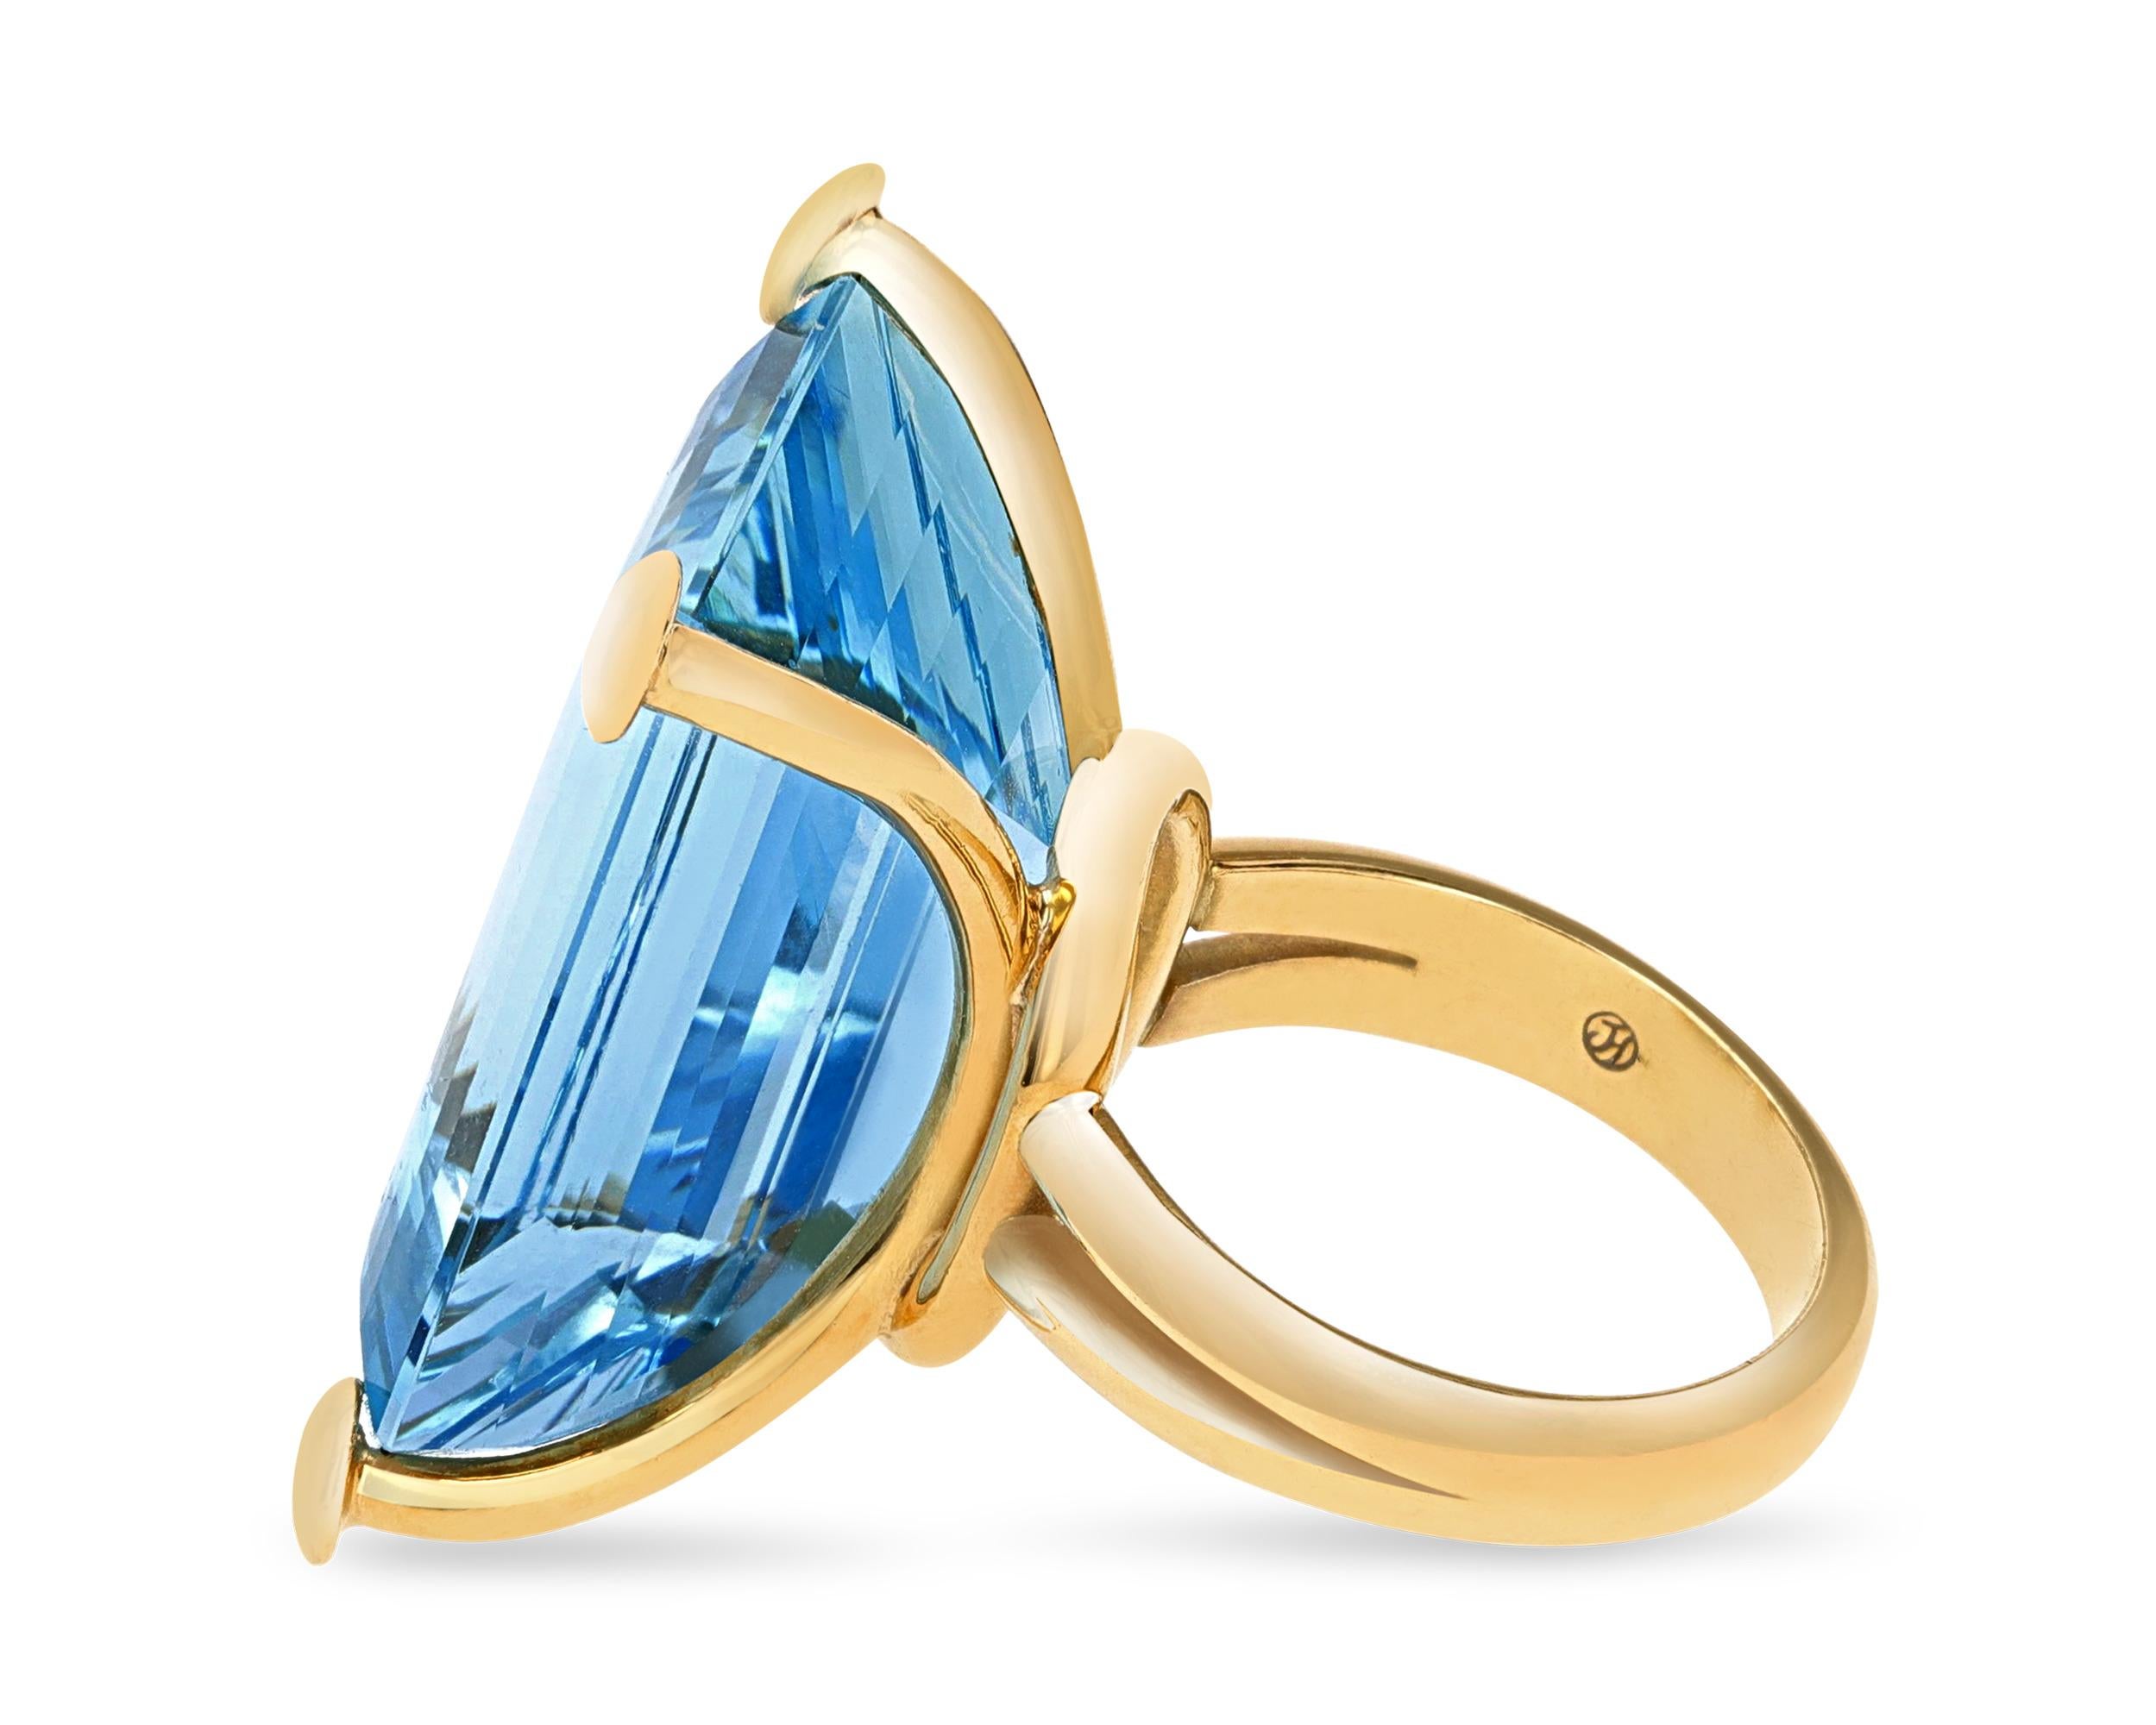 Dieser auffällige Ring enthält einen Aquamarin im Smaragdschliff mit 32,15 Karat. Der schillernde eisblaue Farbton und die Klarheit des Edelsteins werden durch seinen königlichen Schliff und seine beeindruckende Größe noch unterstrichen. Der